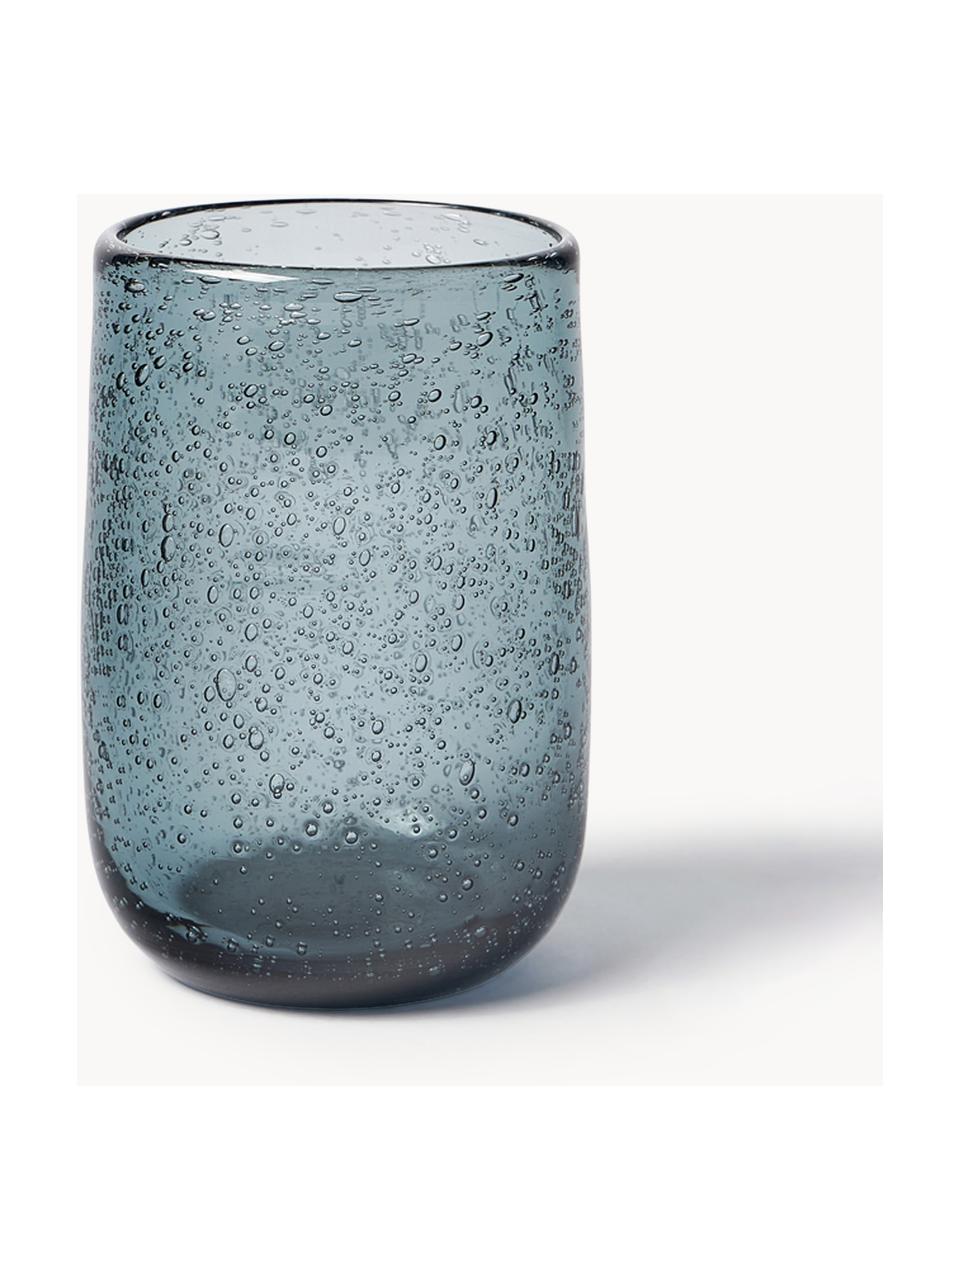 Wassergläser Bari mit Luftbläschen, 6 Stück, Glas, Graublau, Ø 7 x H 11 cm, 330 ml